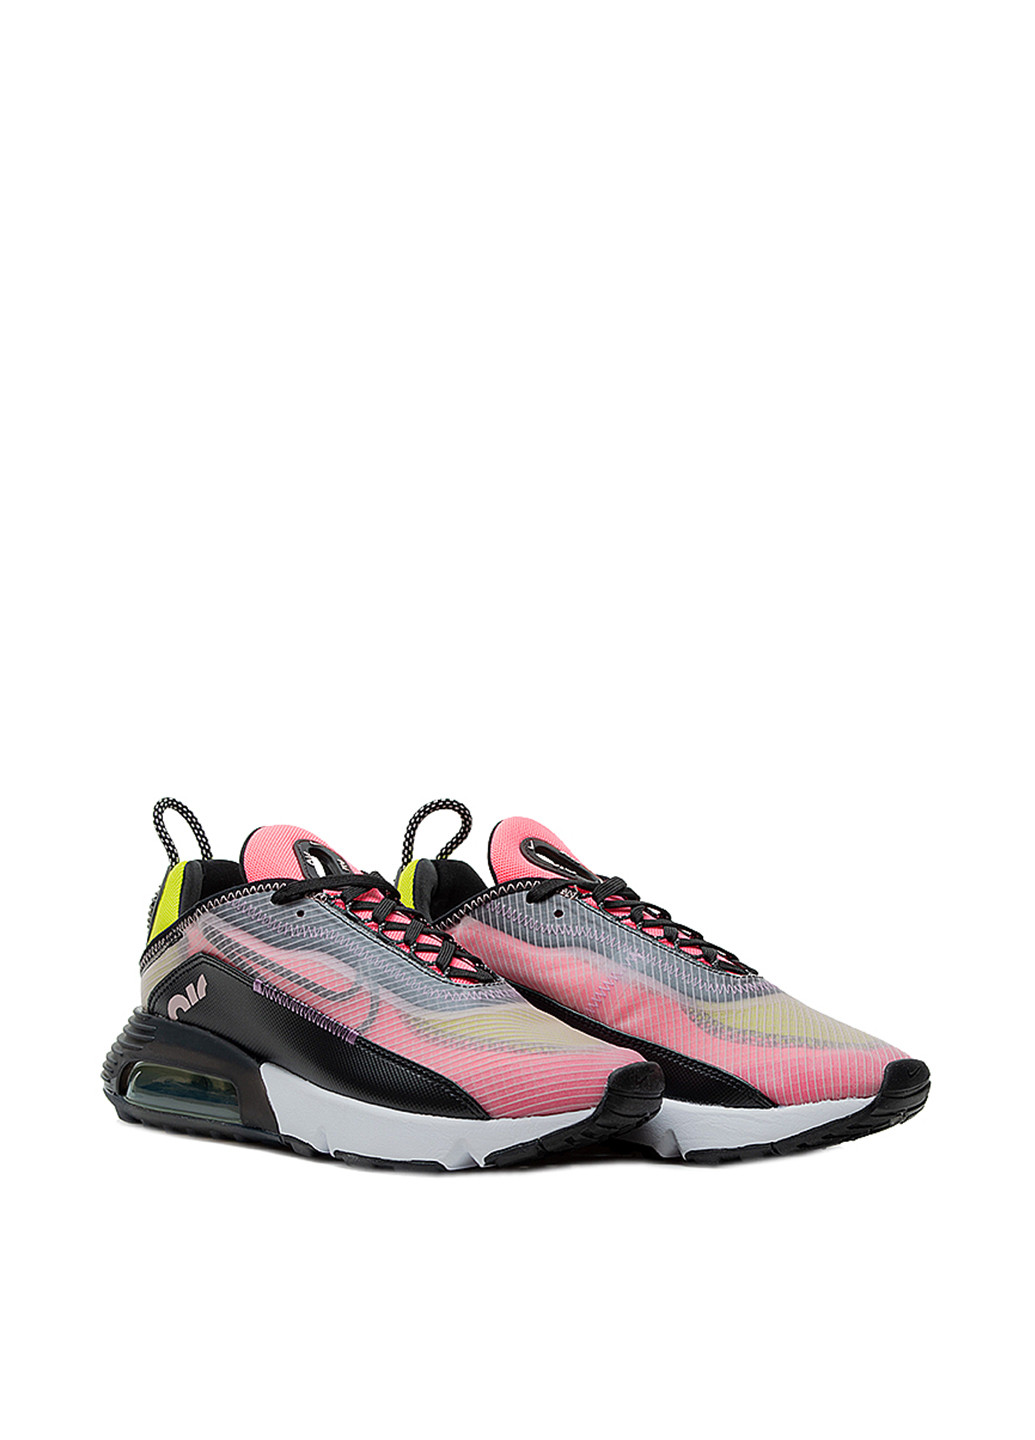 Цветные всесезонные кроссовки Nike Nike Air Max 2090